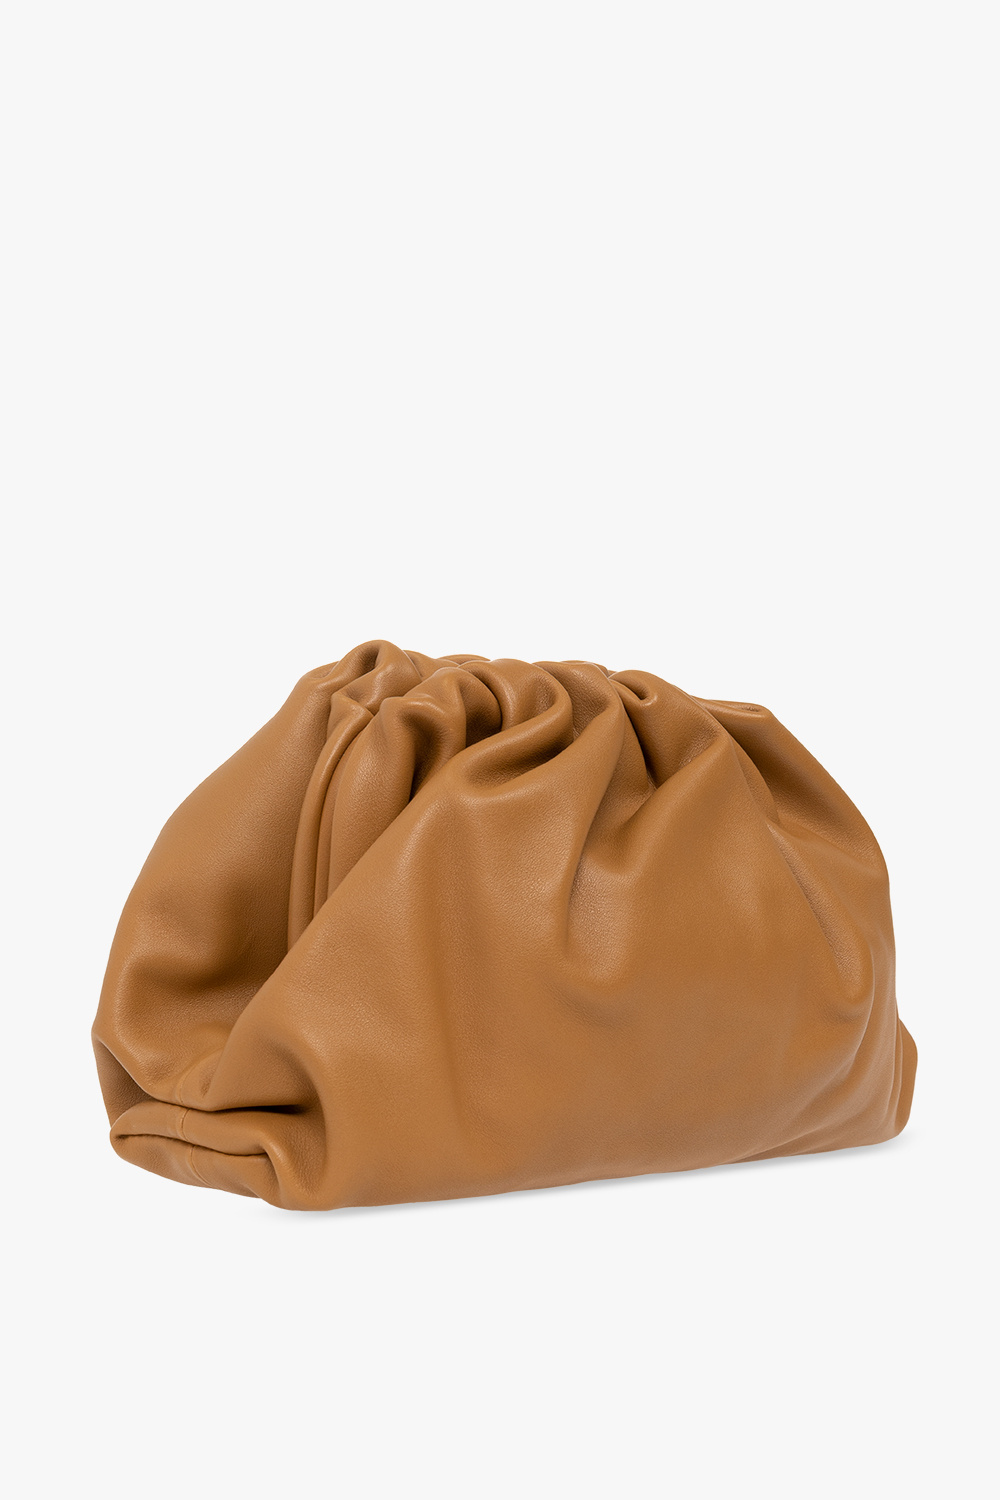 bottega tout Veneta ‘Pouch Small’ handbag